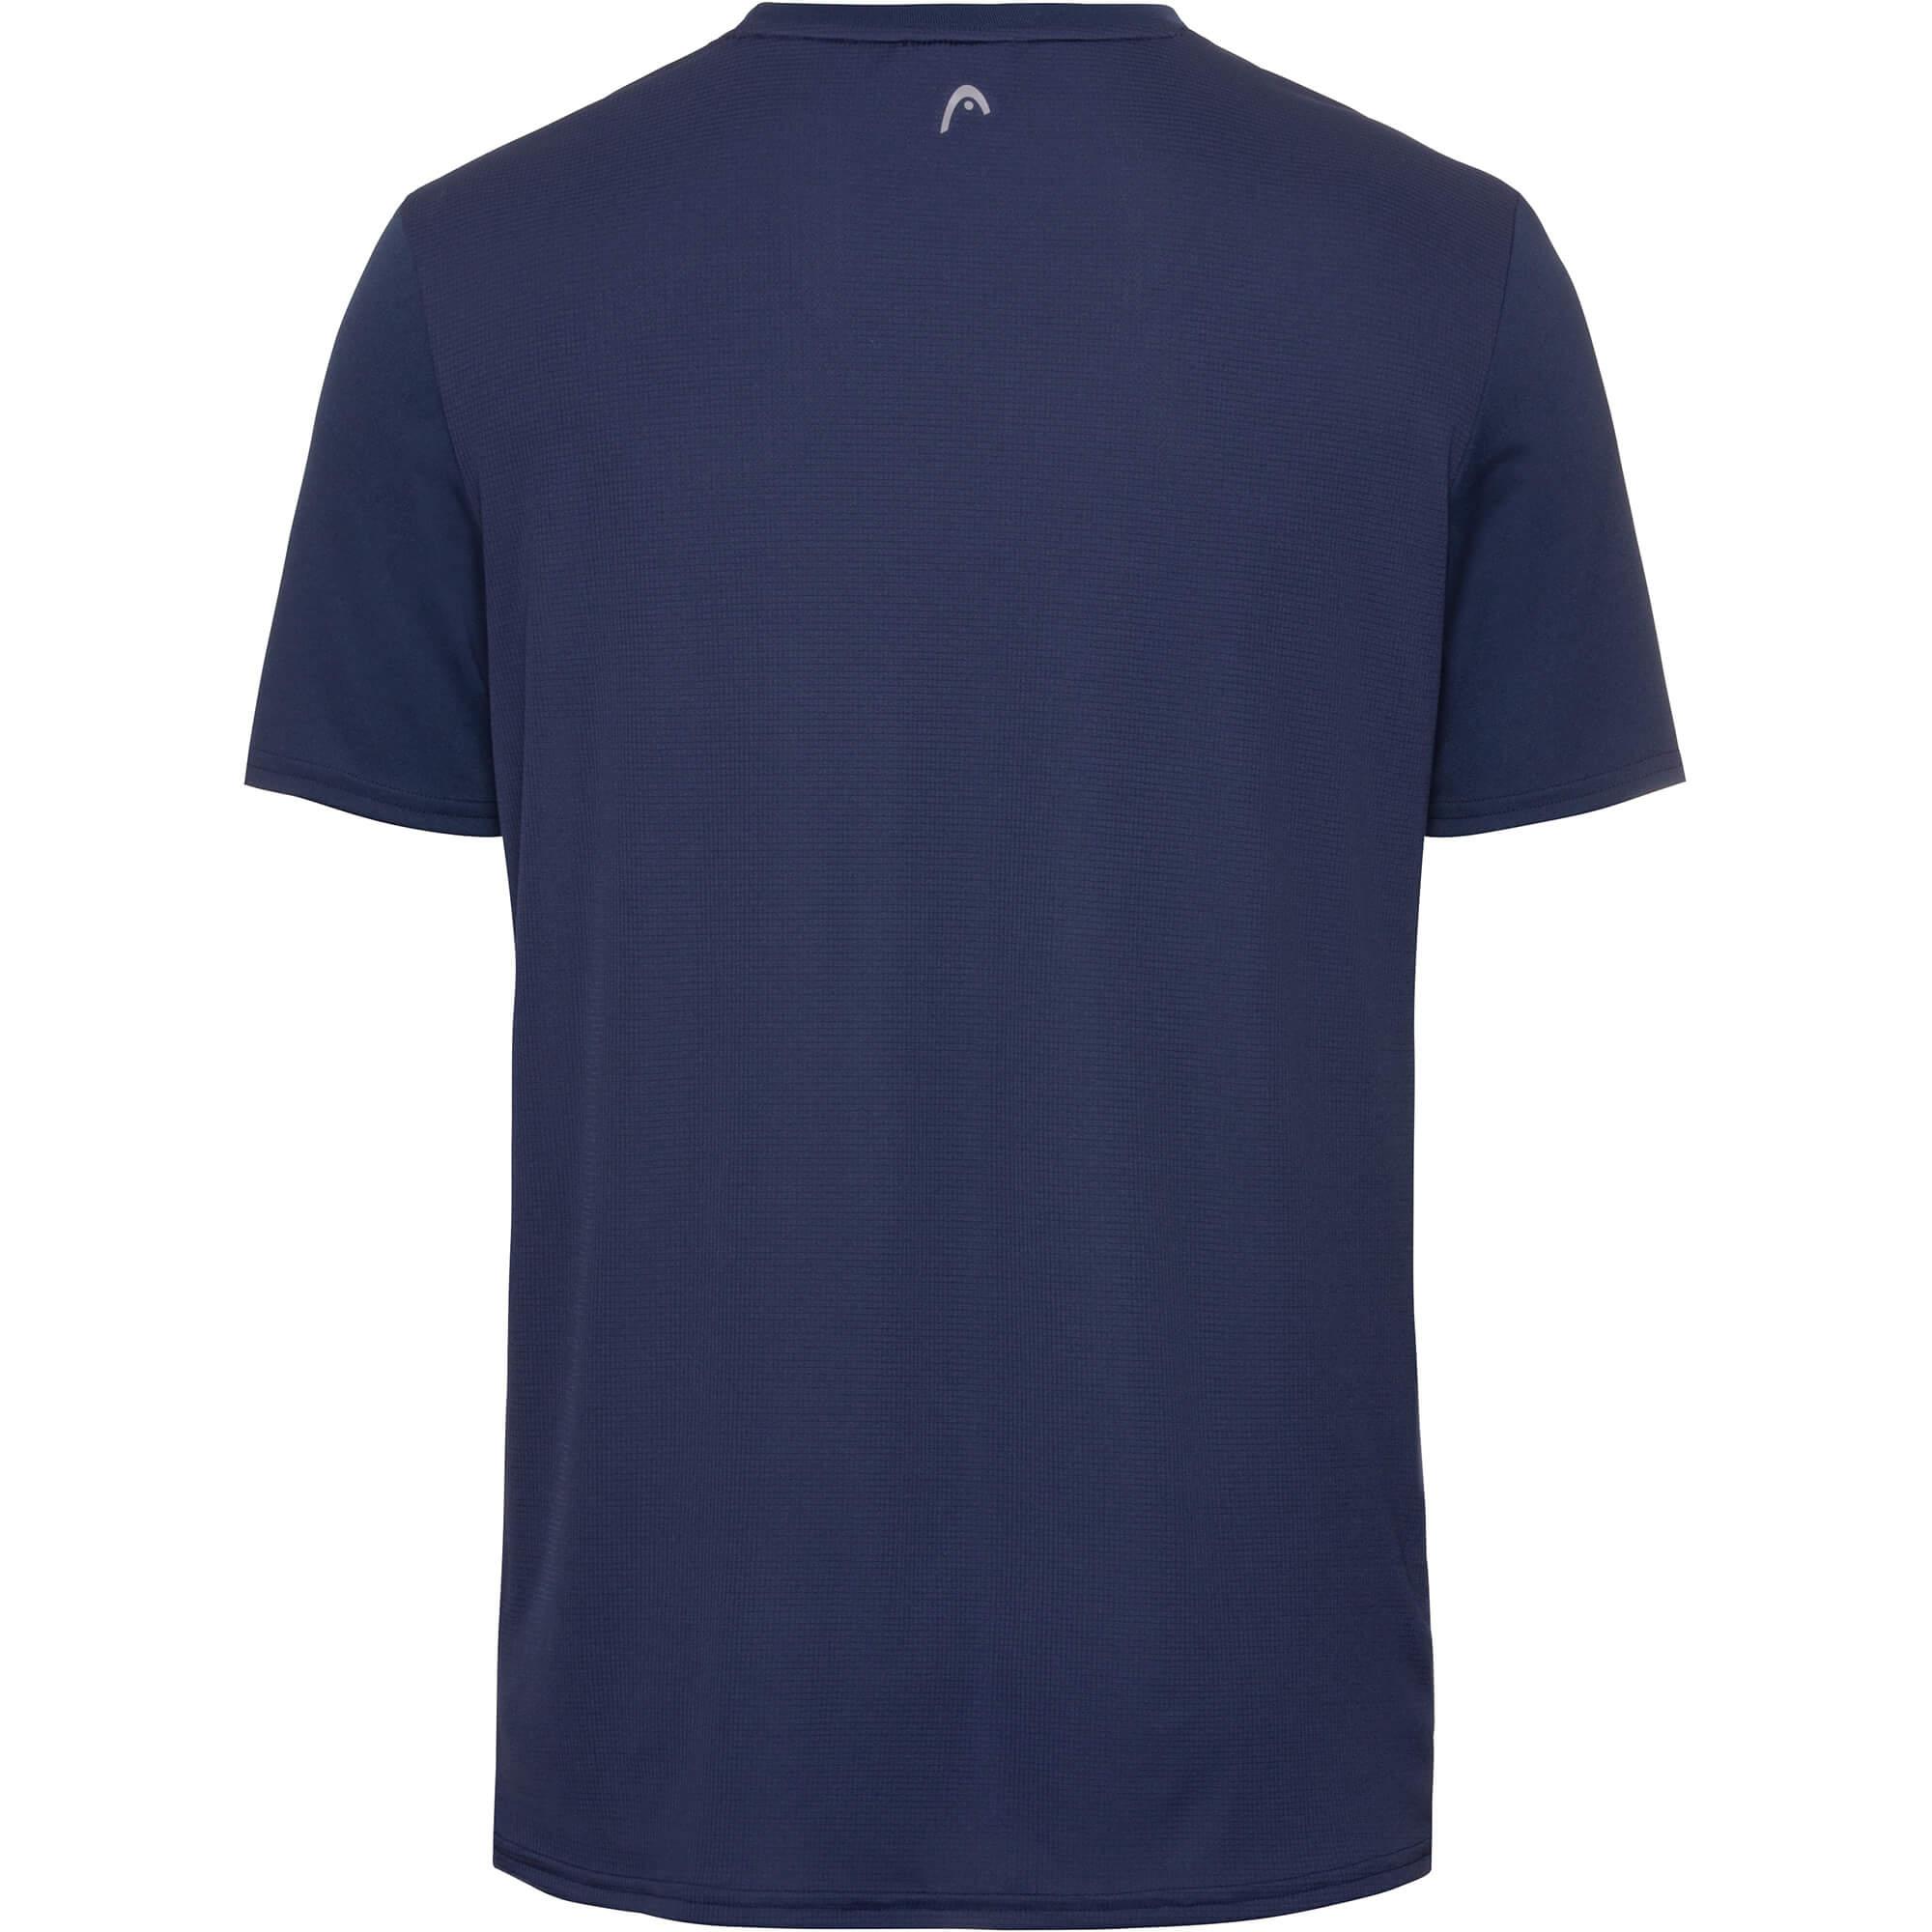 Head Boys Slider T-Shirt - Dark Blue/Royal Blue - Tennisnuts.com